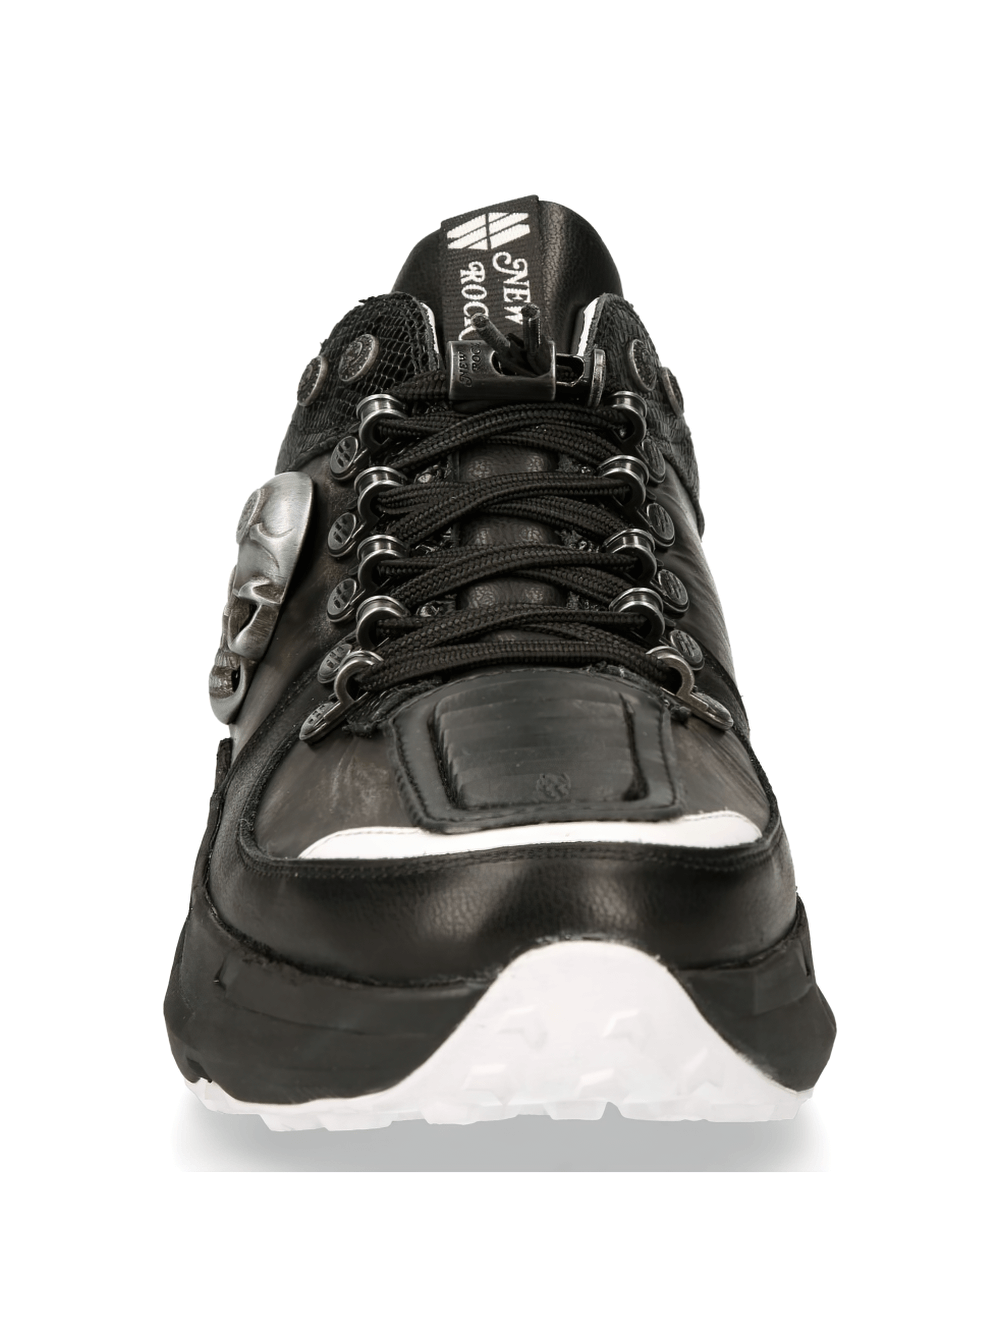 NEW ROCK Edgy Skull Emblem Black Sneaker for Trendsetters